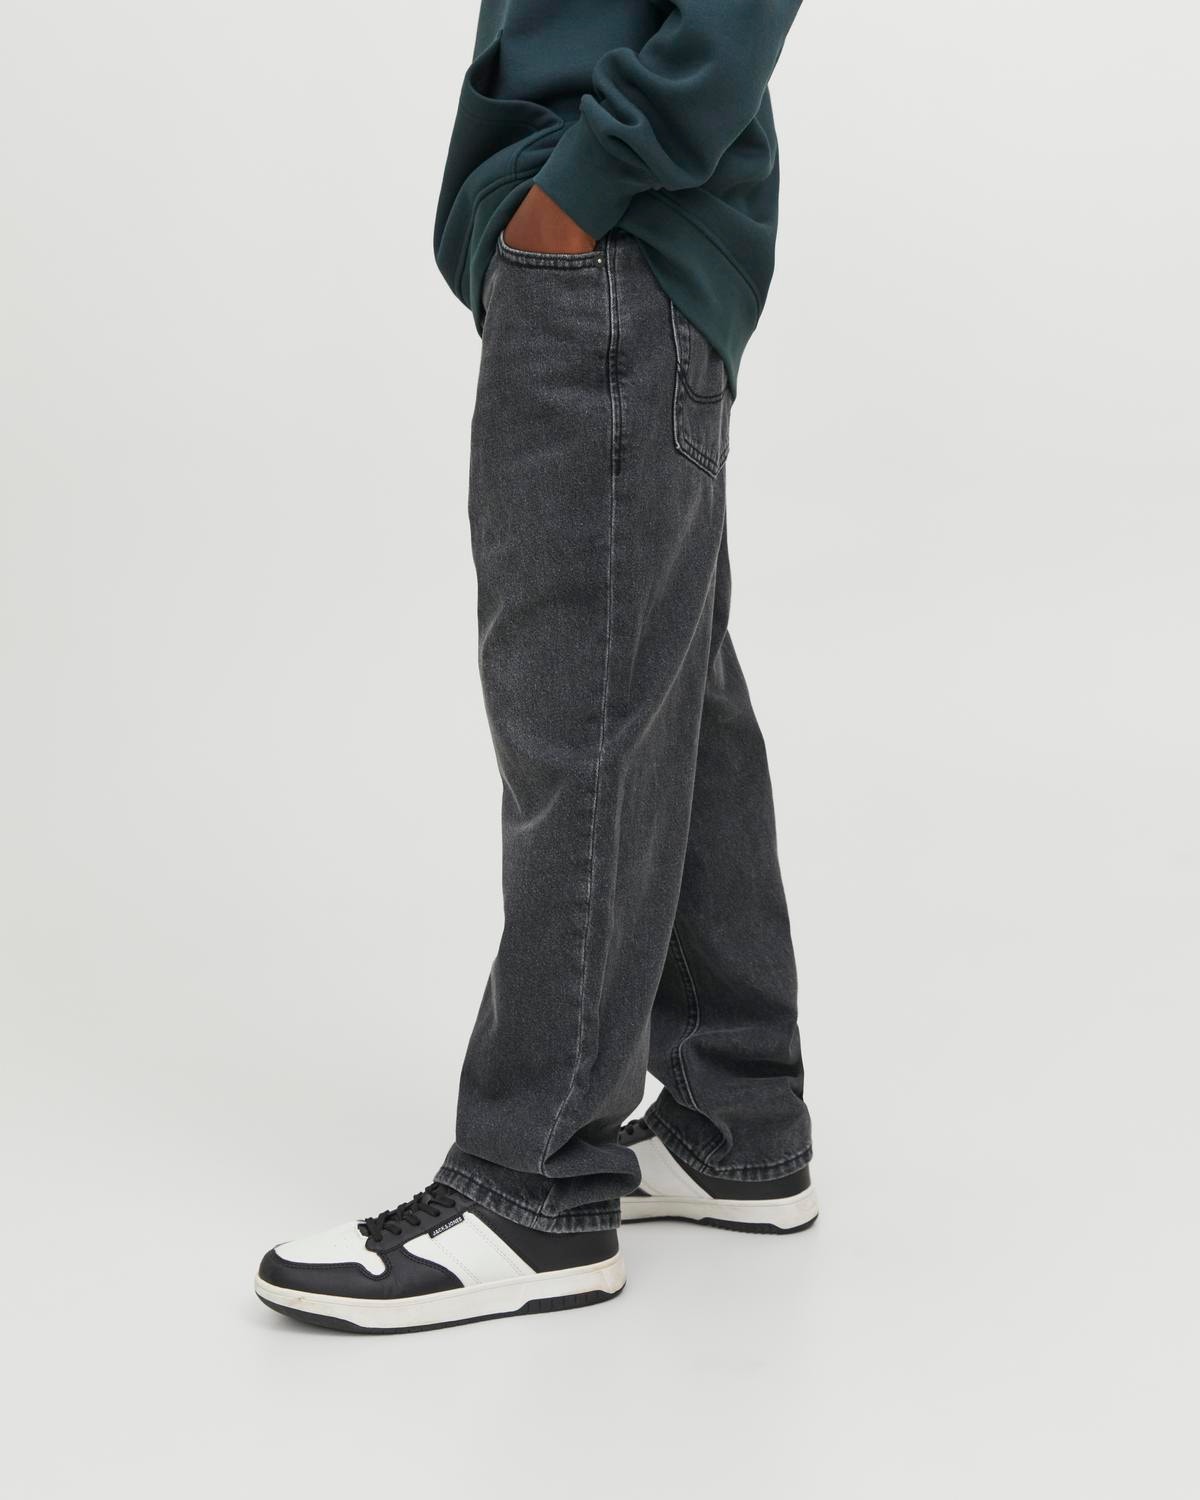 Jack & Jones JJICHRIS JJORIGINAL MF 845 Relaxed Fit Jeans For boys -Black Denim - 12251085